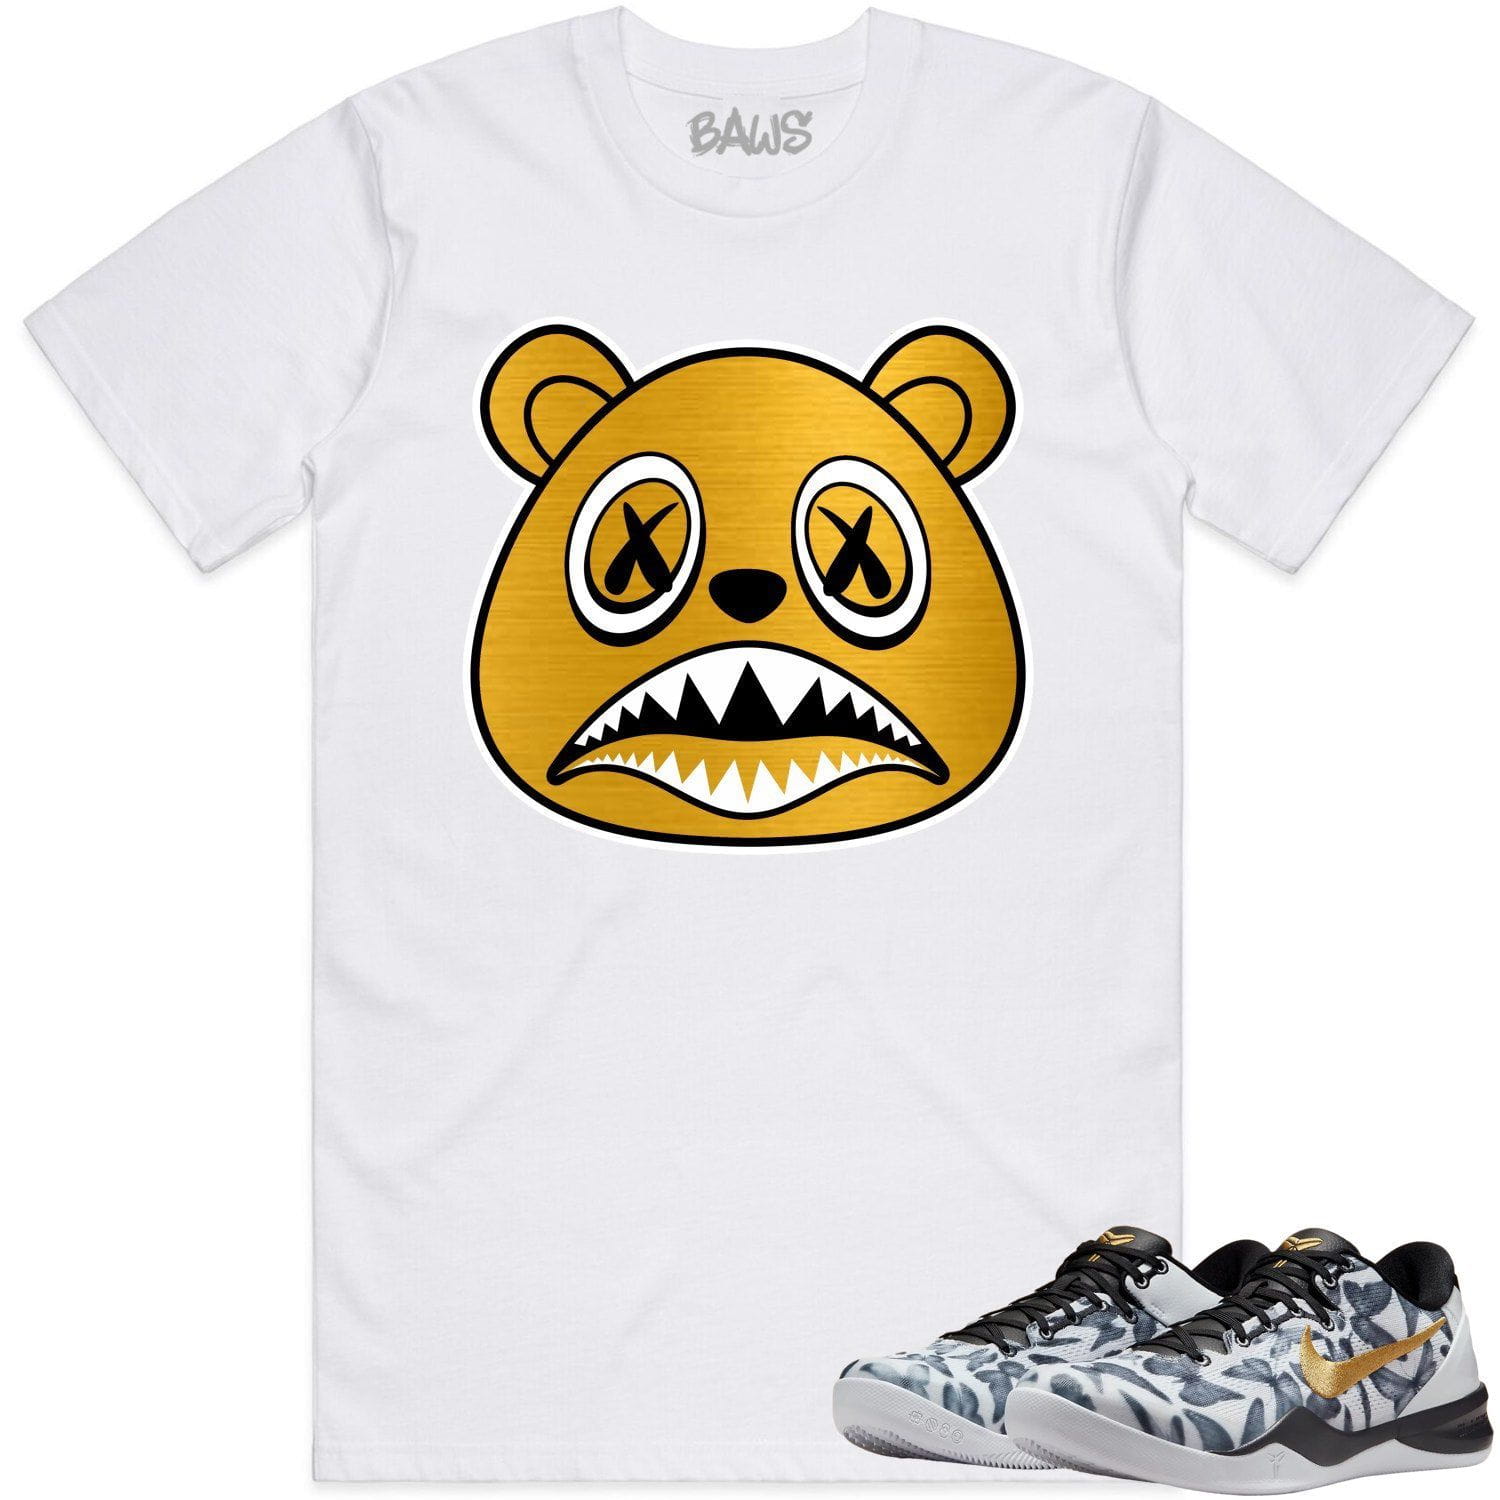 Mambacita 8ss Shirt - Kobe 8 Mambacita Gigi Shirts - Baws Bear